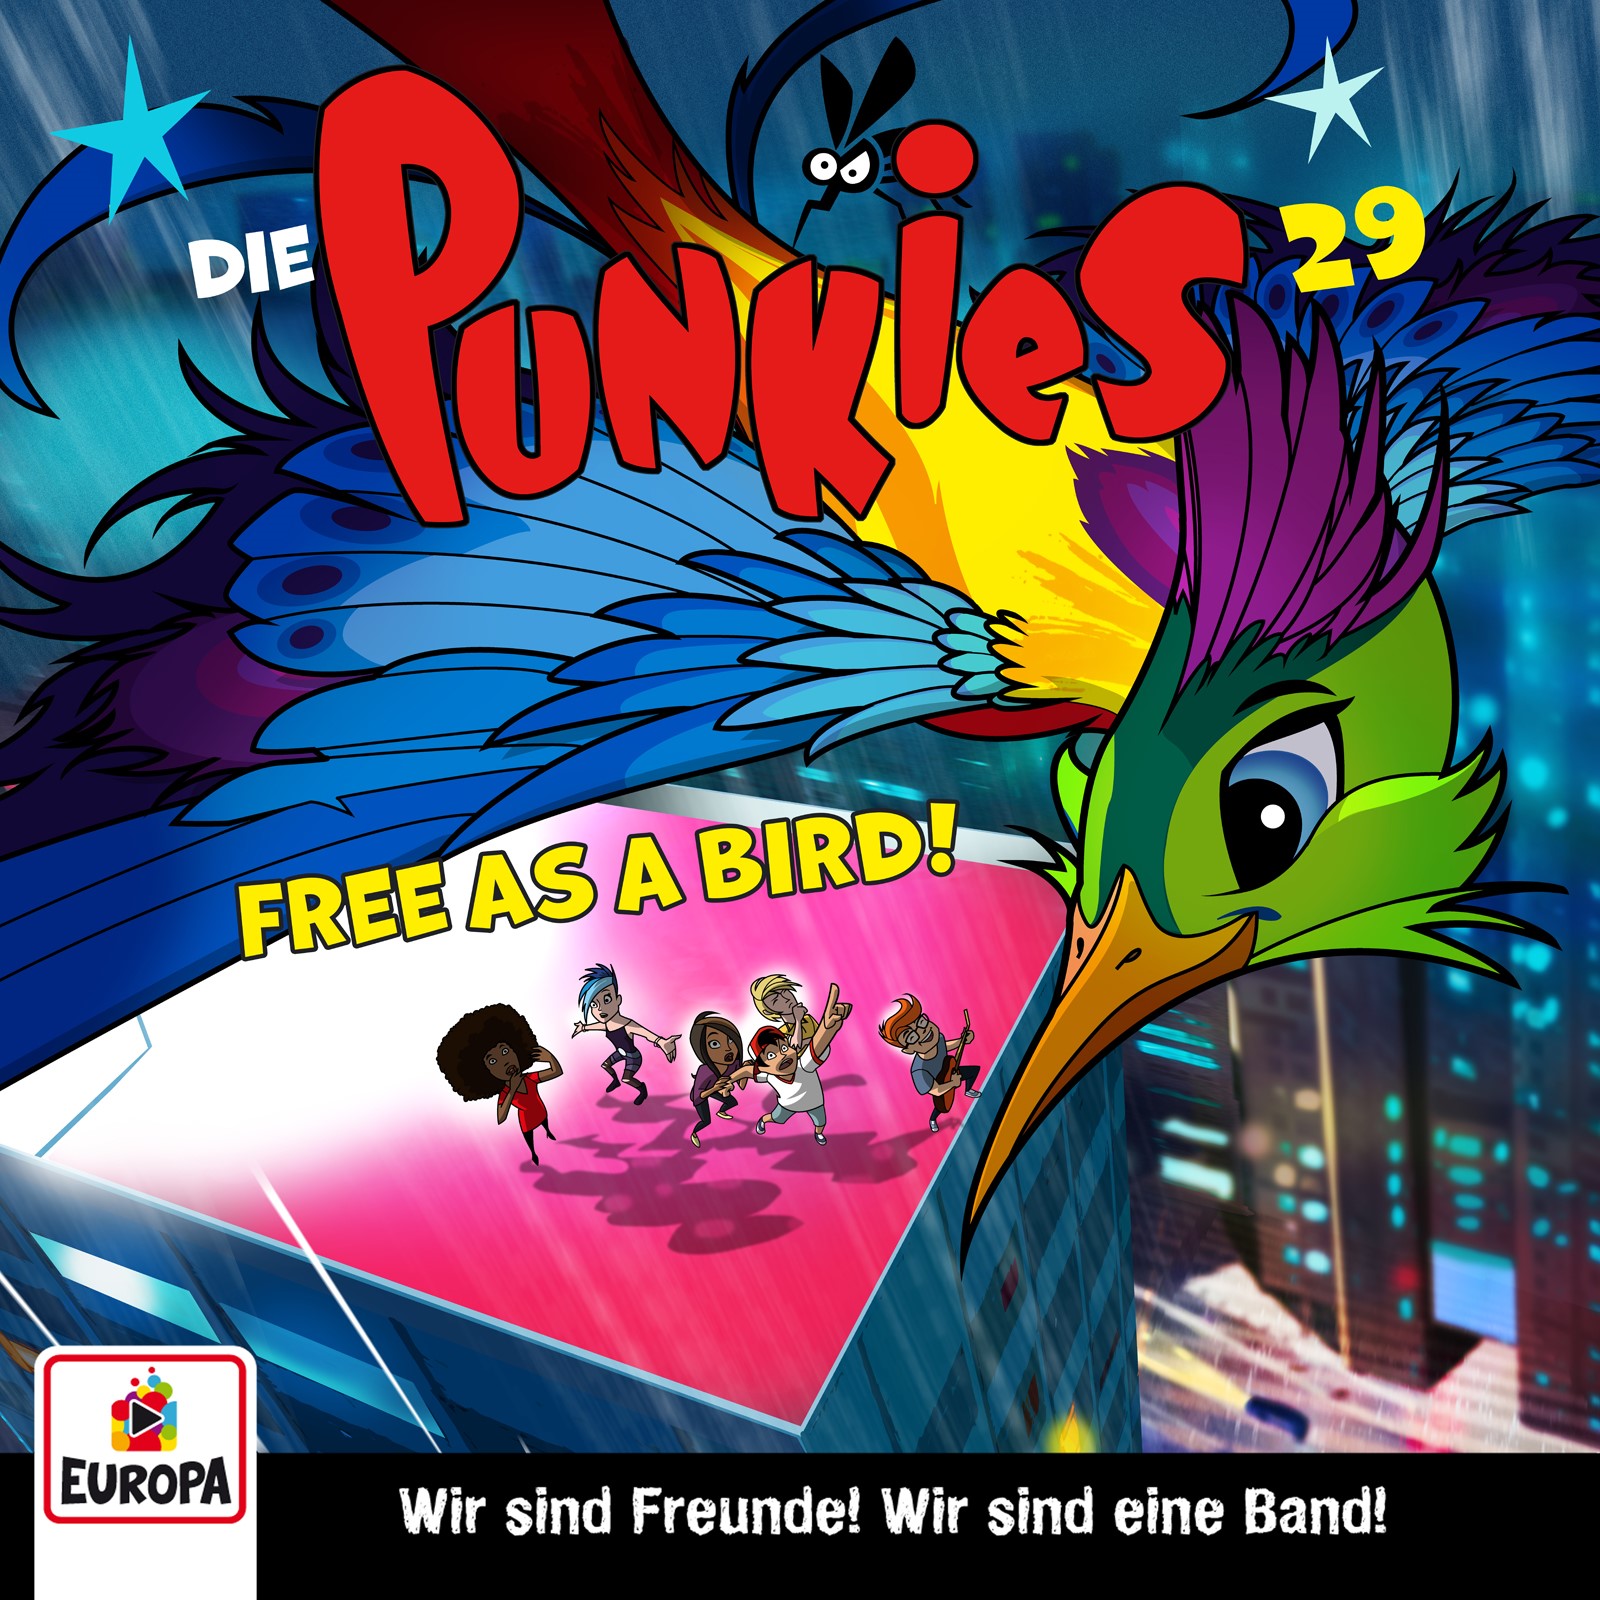 Die Punkies  - Free as a Bird